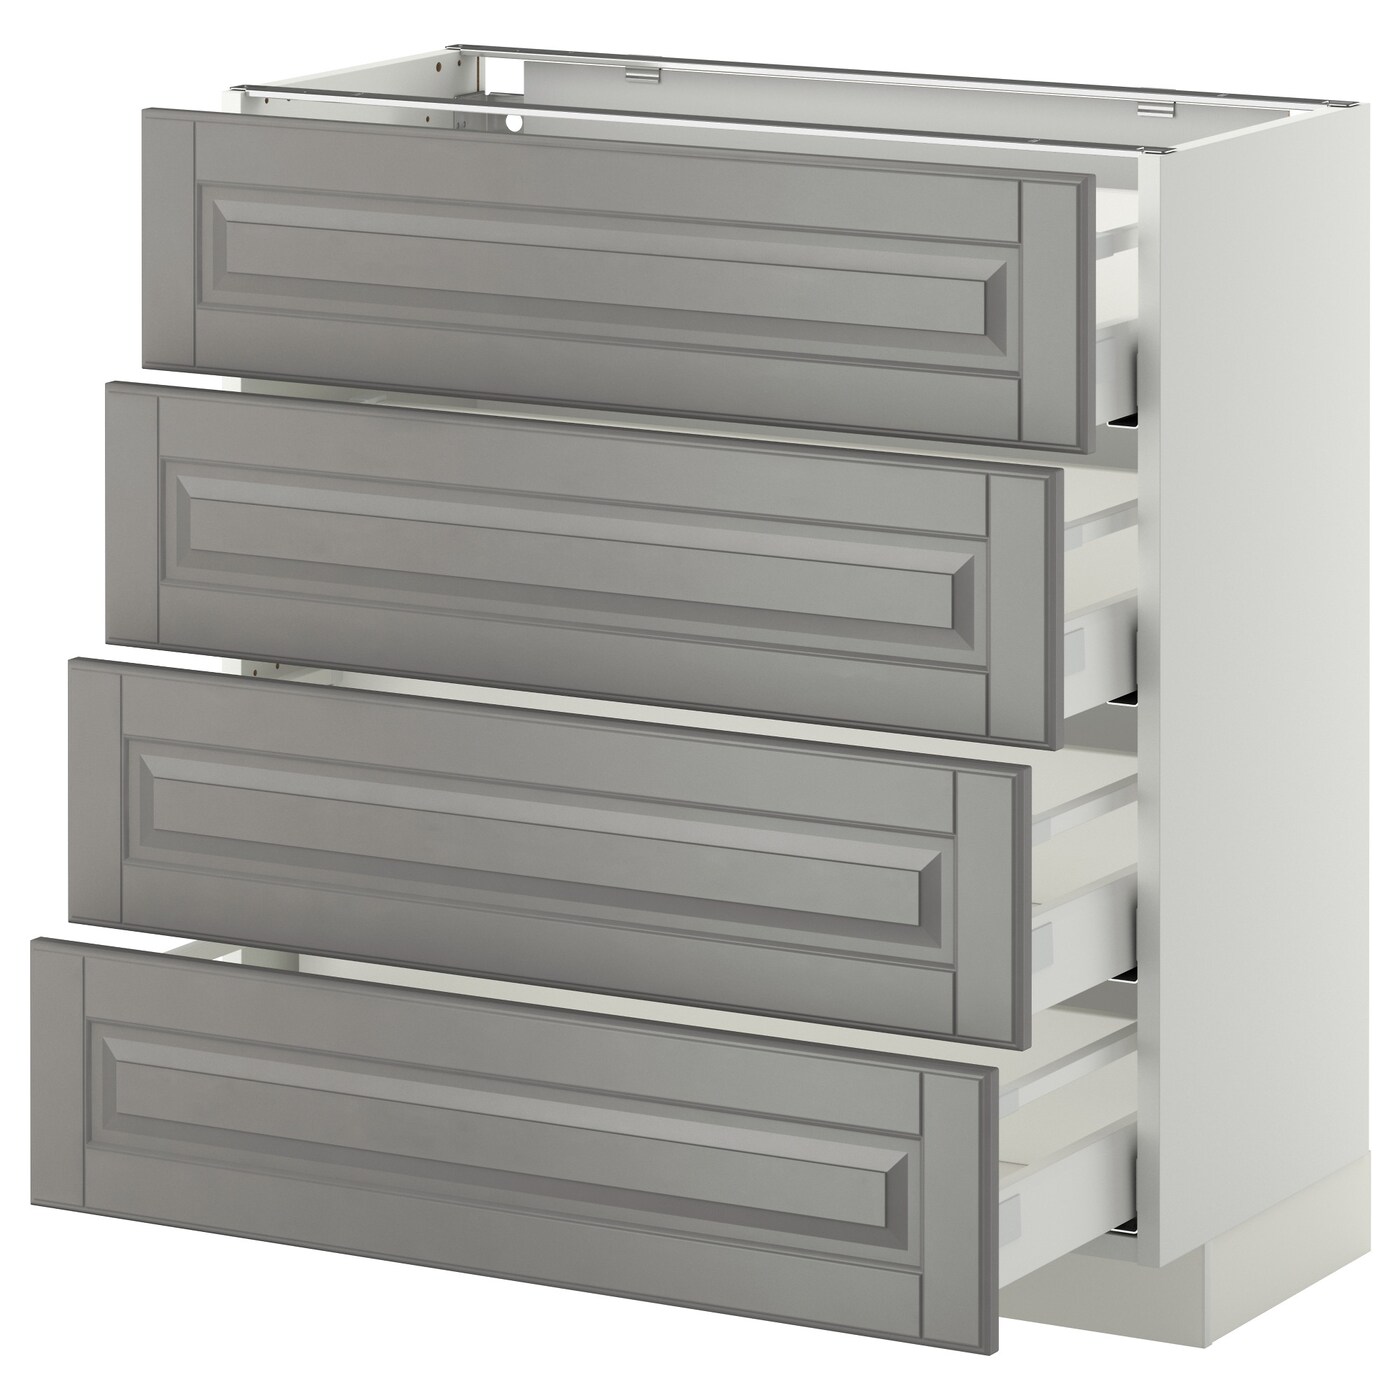 Напольный кухонный шкаф  - IKEA METOD MAXIMERA, 88x39,5x80см, белый/серый, МЕТОД МАКСИМЕРА ИКЕА